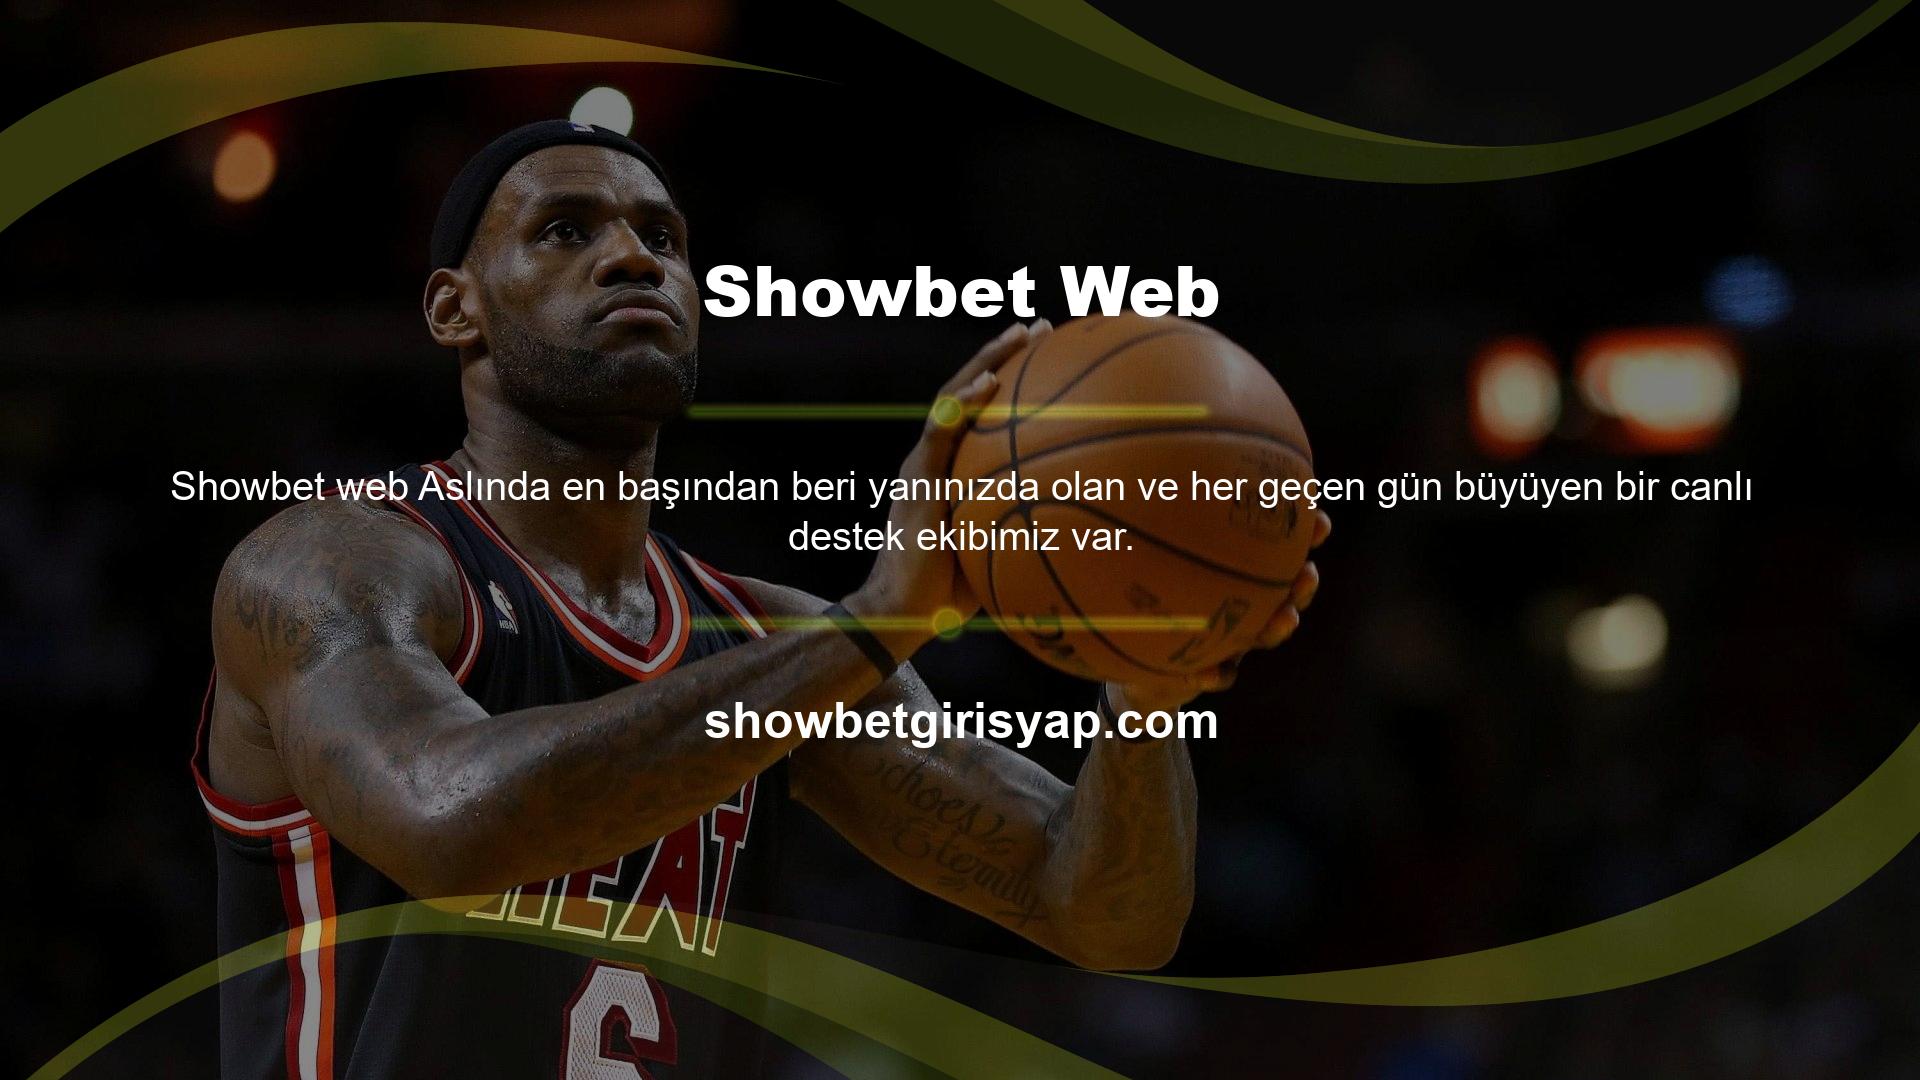 Showbet web sitesinin canlı destek ekibi sayesinde birçok kullanıcı, Showbet web sitesinin içeriğinden güvenle ve keyifle yararlanabiliyor